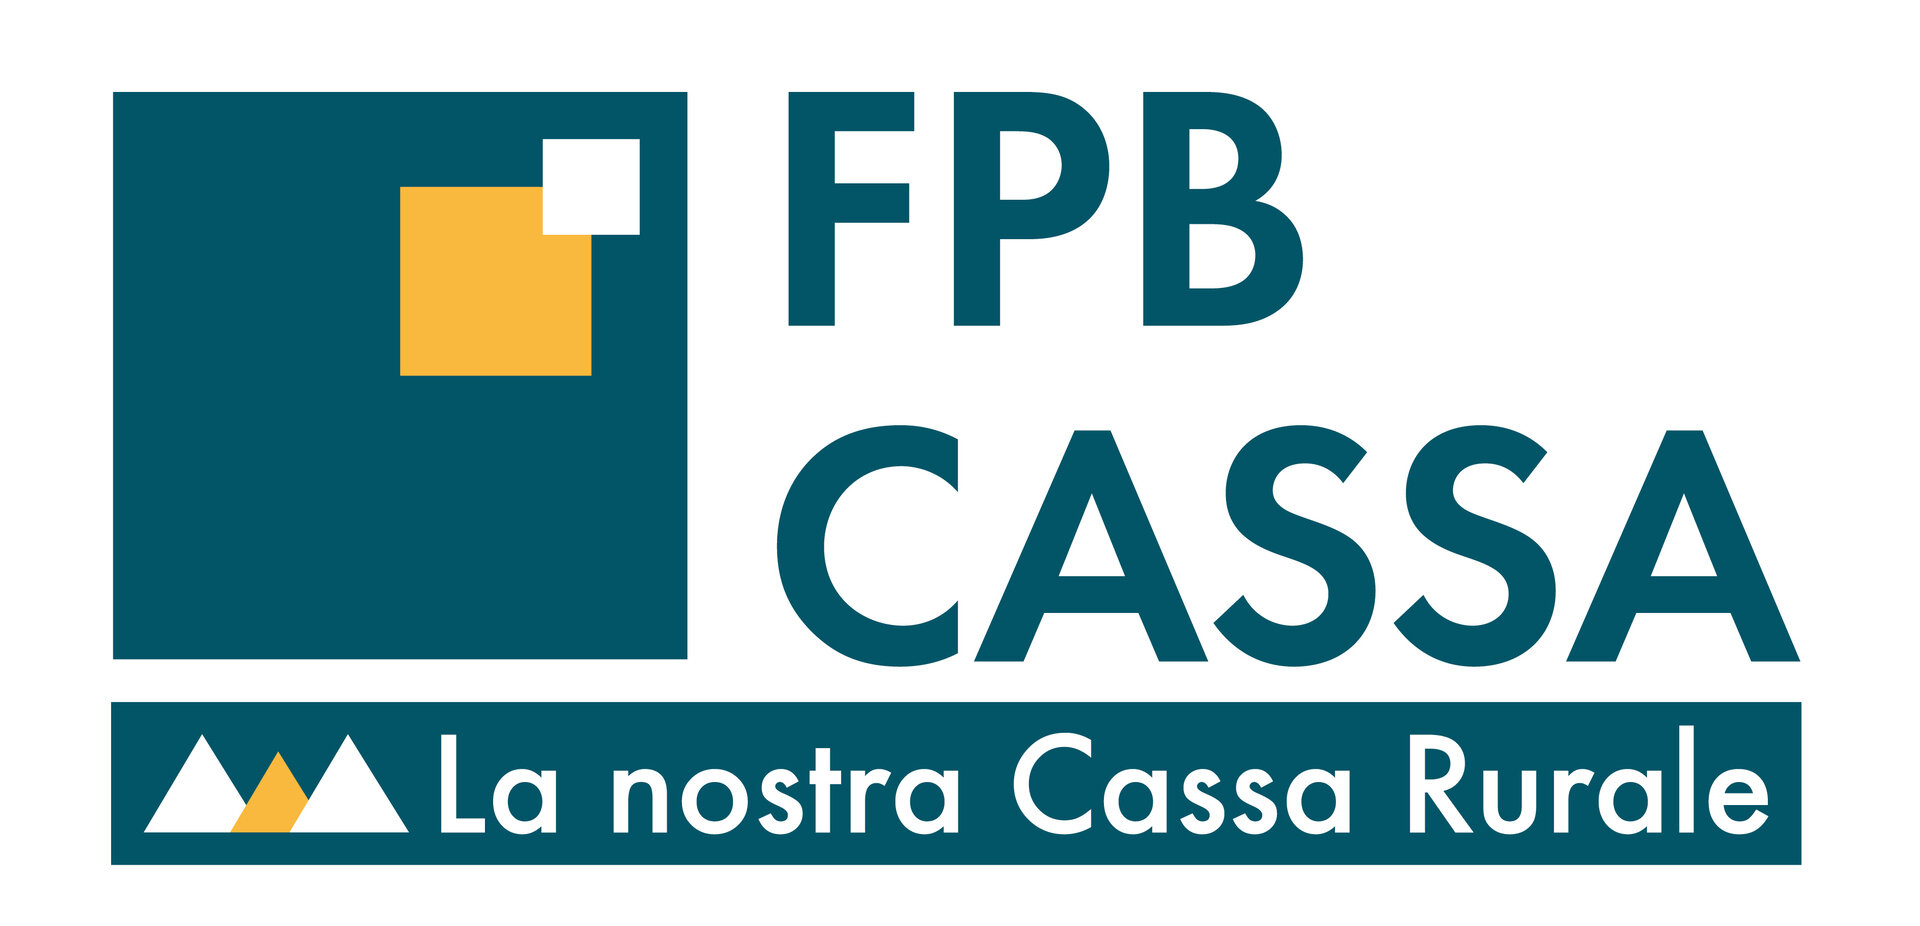 FPB Cassa Di Fassa Primiero Belluno   Zweigstelle Von Moena